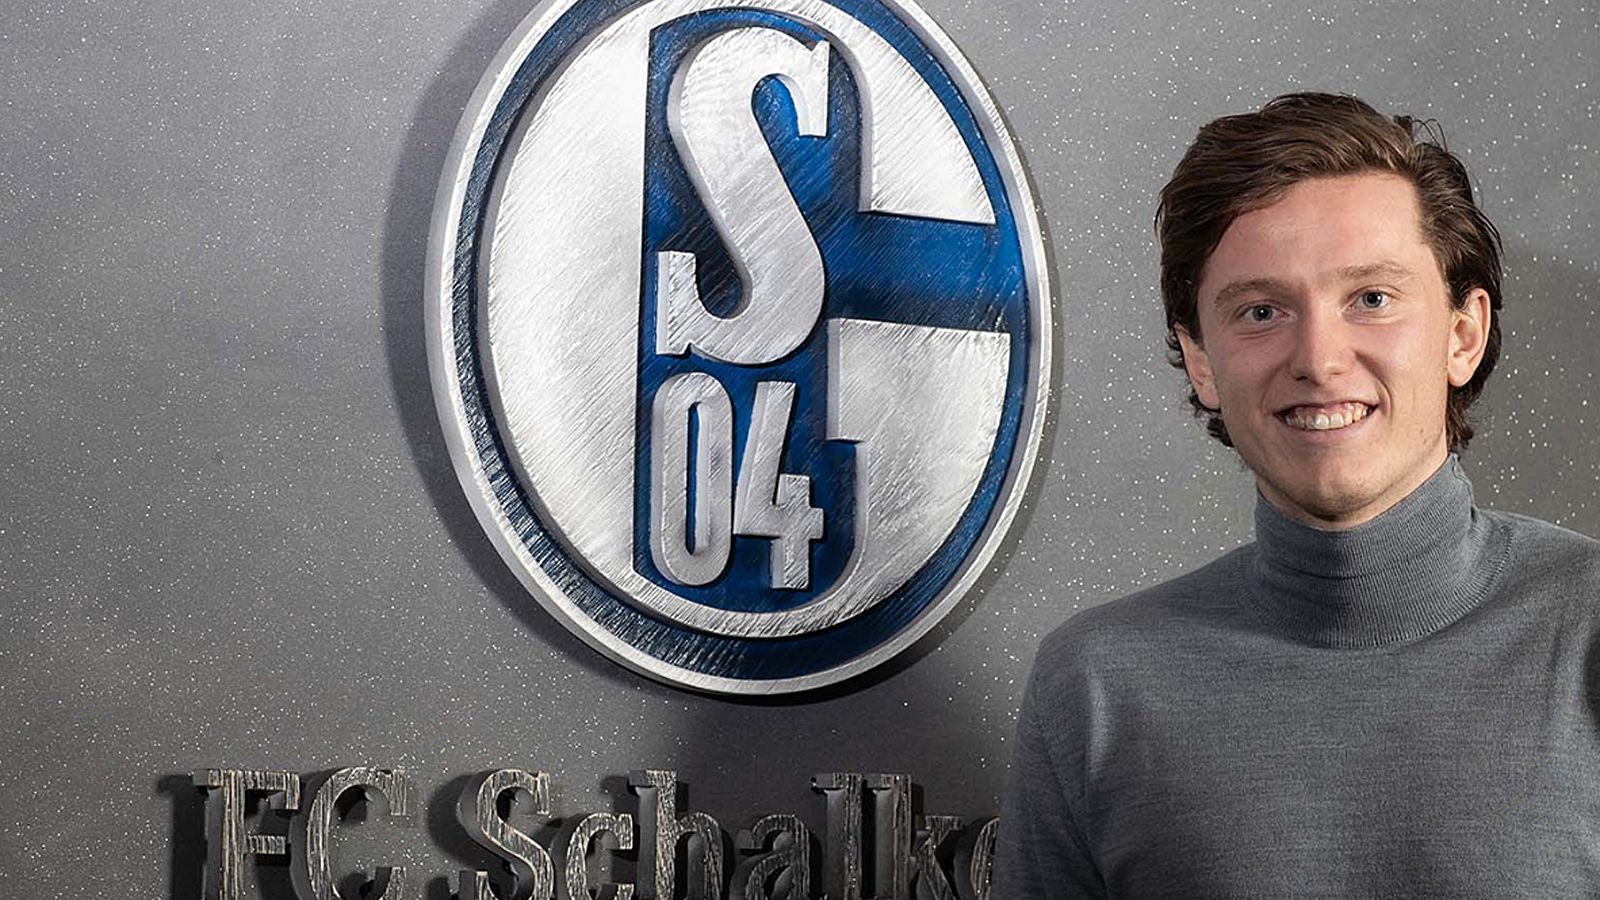 
                <strong>Michael Gregoritsch (Neuzugang FC Schalke 04)</strong><br>
                Der FC Schalke 04 hat sich für die Bundesliga-Rückrunde in der Offensive verstärkt und die Verpflichtung von Michael Gregoritsch bekanntgegeben. Der Stürmer wechselt auf Leihbasis bis zum Saisonende vom FC Augsburg nach Gelsenkirchen. "Ich freue mich sehr auf die neue Herausforderung und sehe es als große Chance für mich, für diesen riesigen Verein zu spielen. Ich kann es kaum erwarten, mit den Schalker Fans im Rücken aufzulaufen", sagte der 25-Jährige anlässlich der Bekanntgabe seines Transfers. Zuletzt kam Gregoritsch in Augsburg nur noch selten zum Einsatz und machte seinem Unmut öffentlich Luft. Dabei kündigte der österreichische Nationalspieler bereits an, den FCA in der Winterpause verlassen zu wollen - genau das ist mit dem Wechsel nach Schalke nun auch passiert.
              